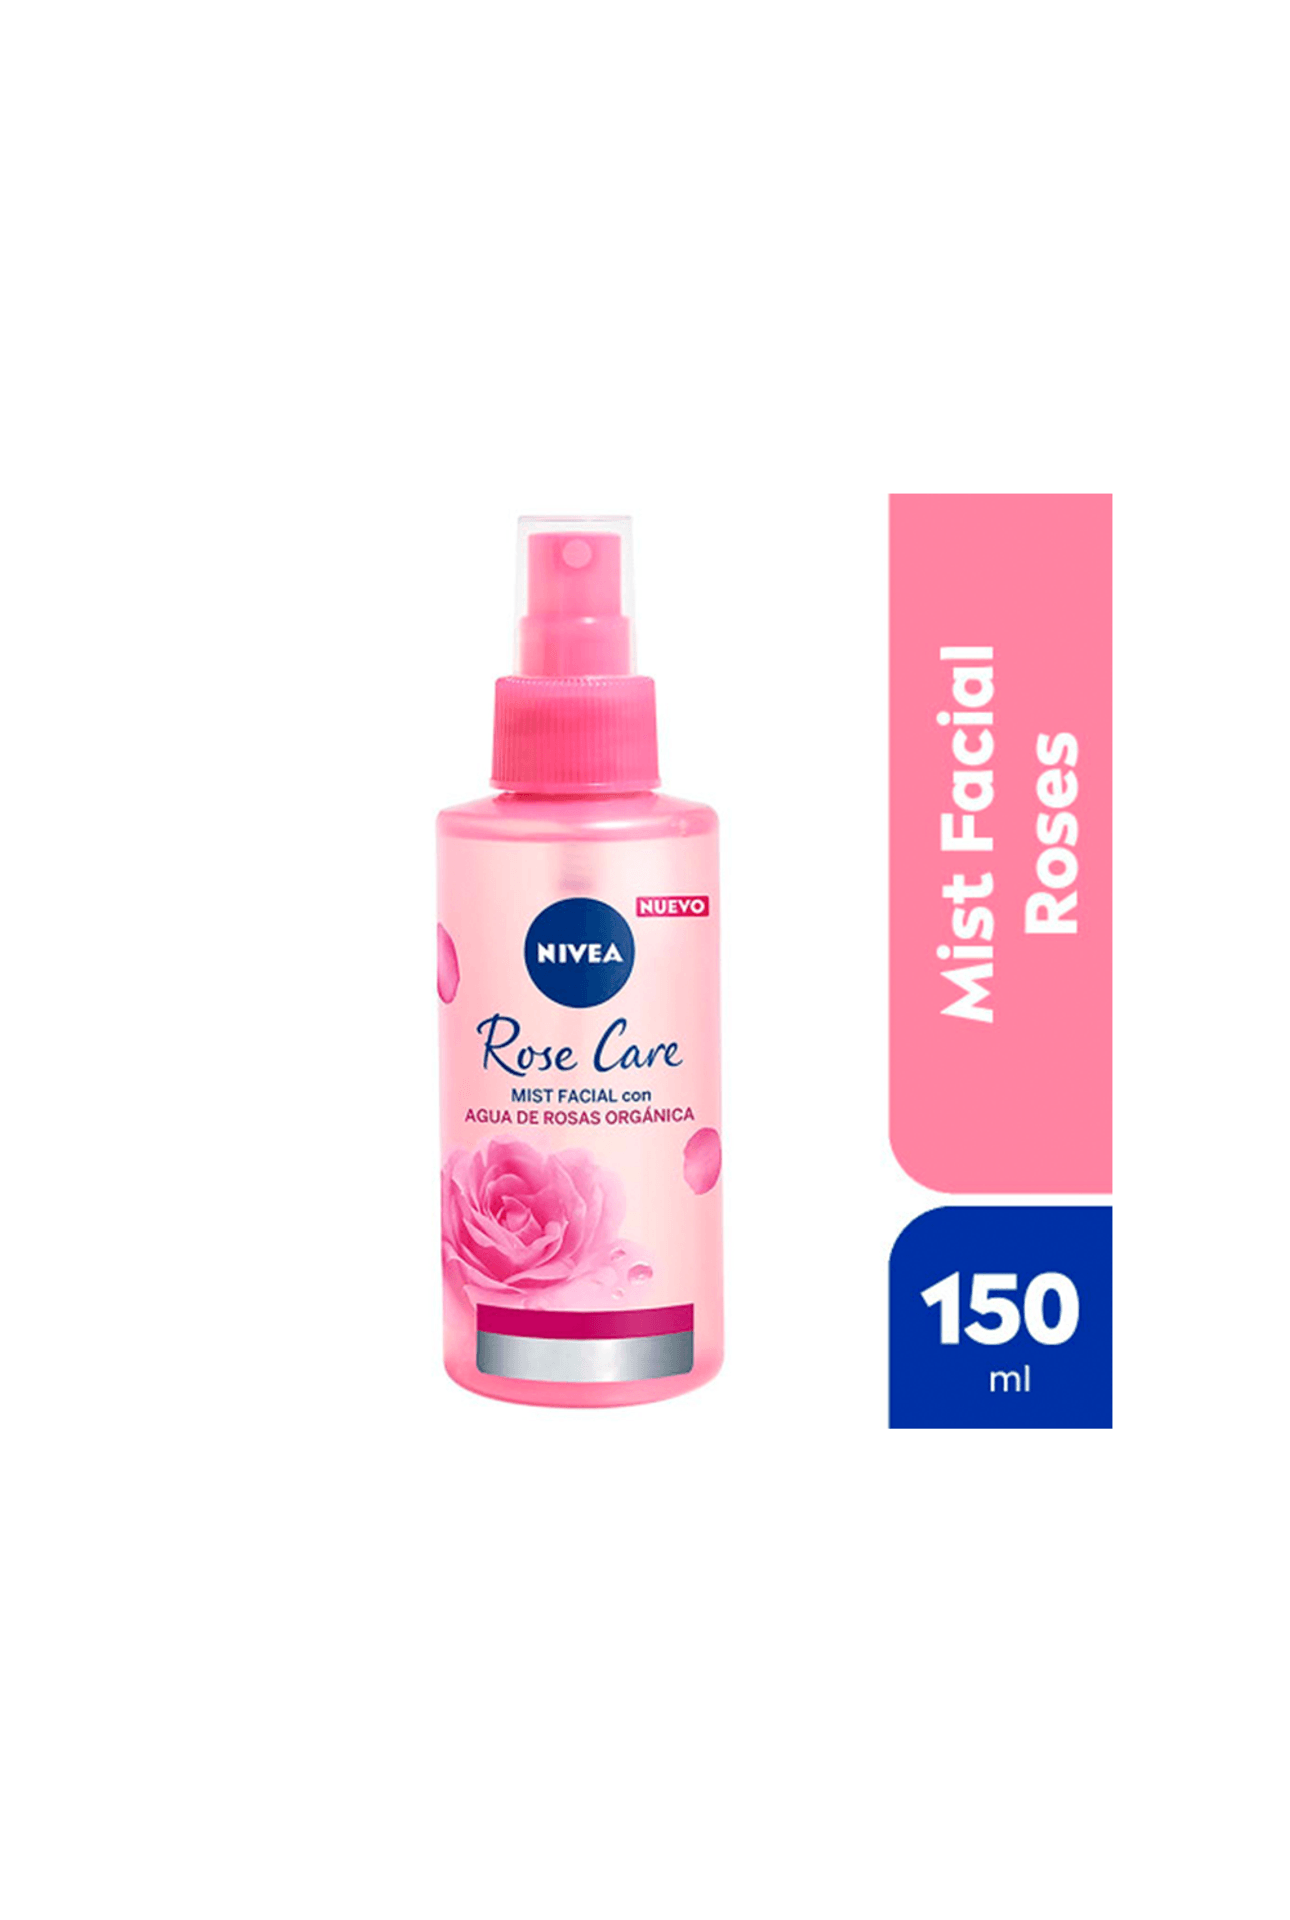 Nivea-Rose-Care-Mist-x-150-ml-4005900806161_img1